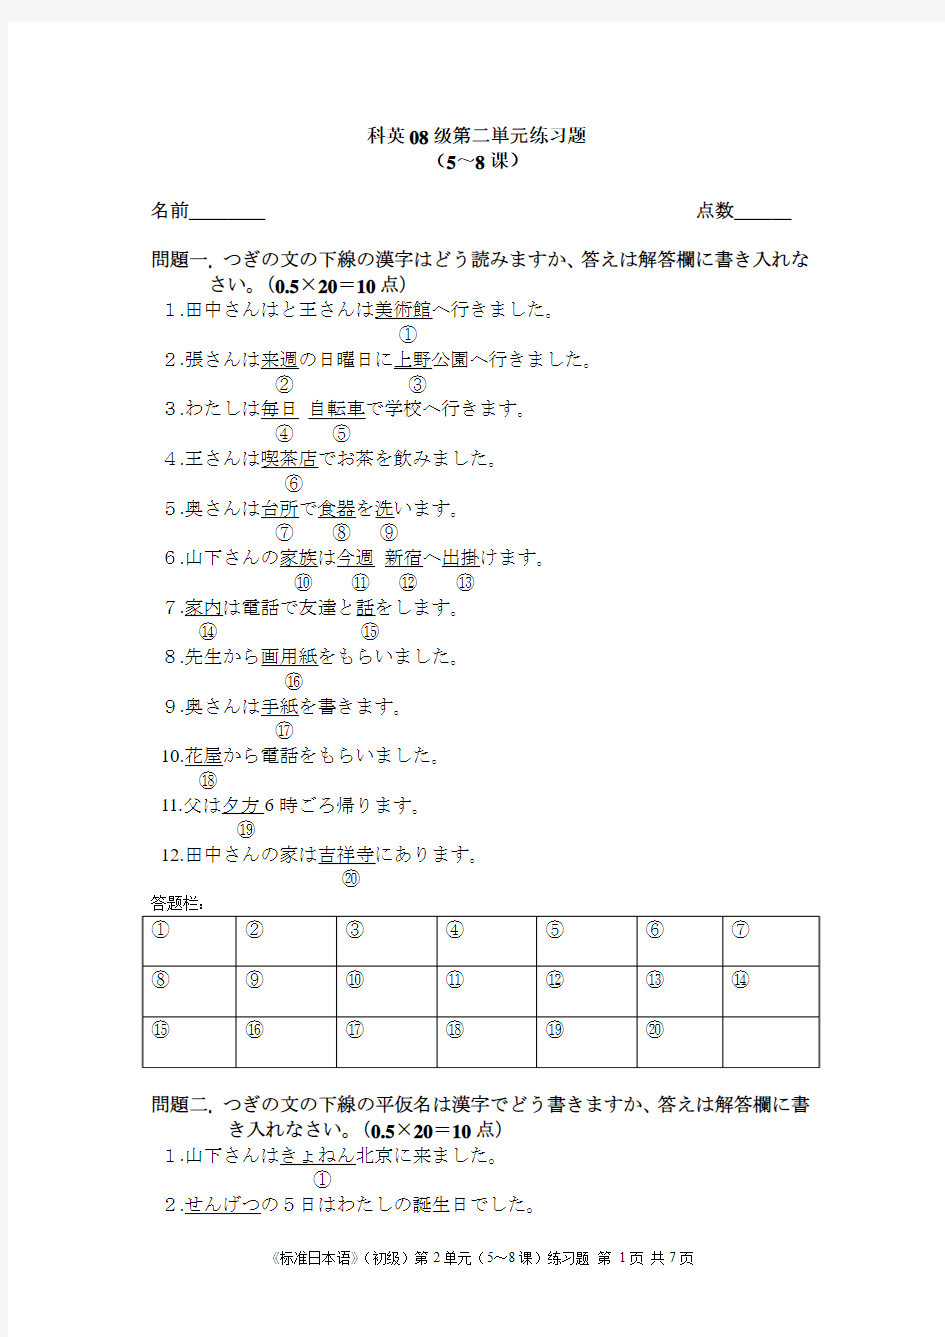 标准日本语,第二单元习题 第二単元(5～8课)